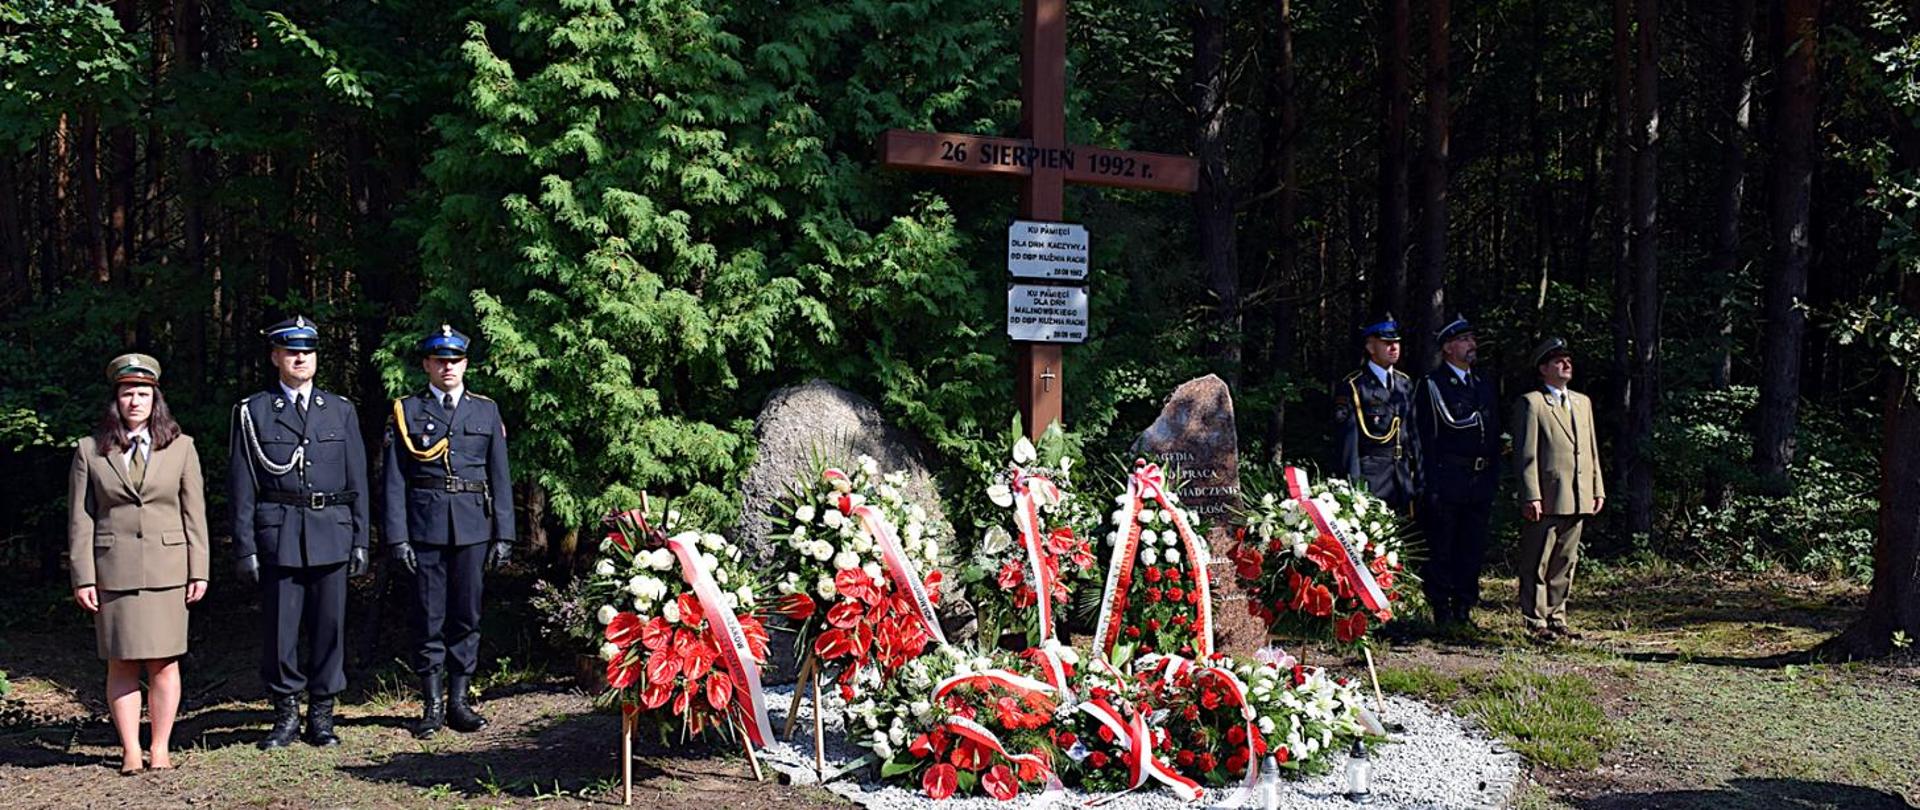 Strażacy PSP, OSP oraz leśnicy w ubraniach wyjściowych pełnią wartę przy symbolicznych kamieniach i krzyżu upamiętniających wielki pożar w Kuźni Raciborskiej.